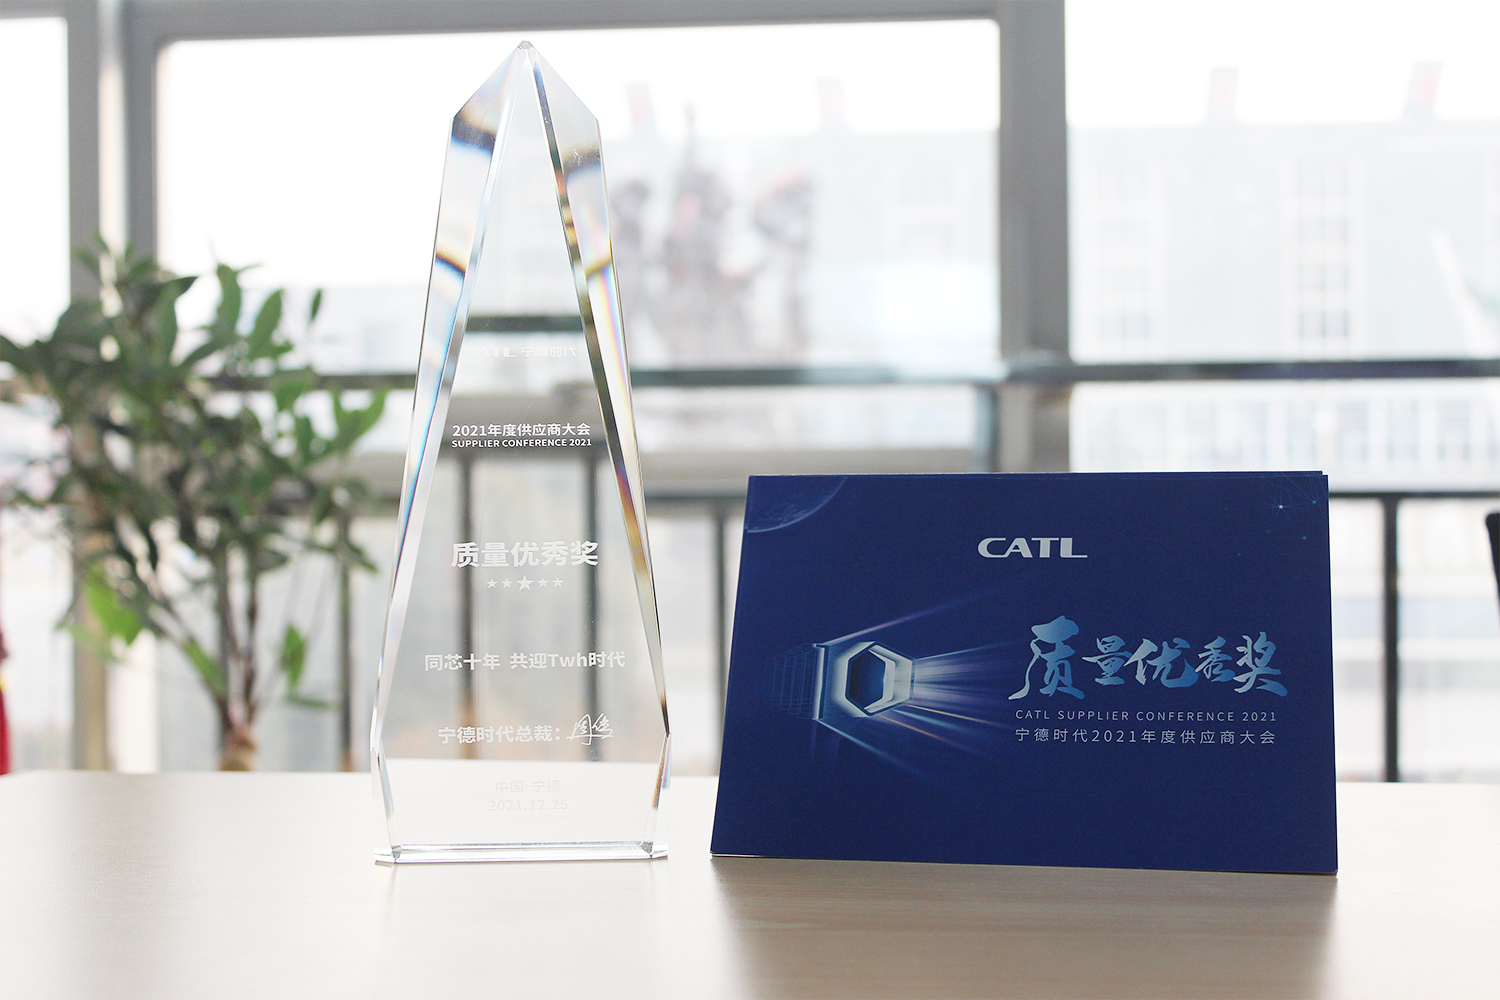 纳科诺尔荣获宁德时代(CATL)公司“质量优秀奖”荣誉称号